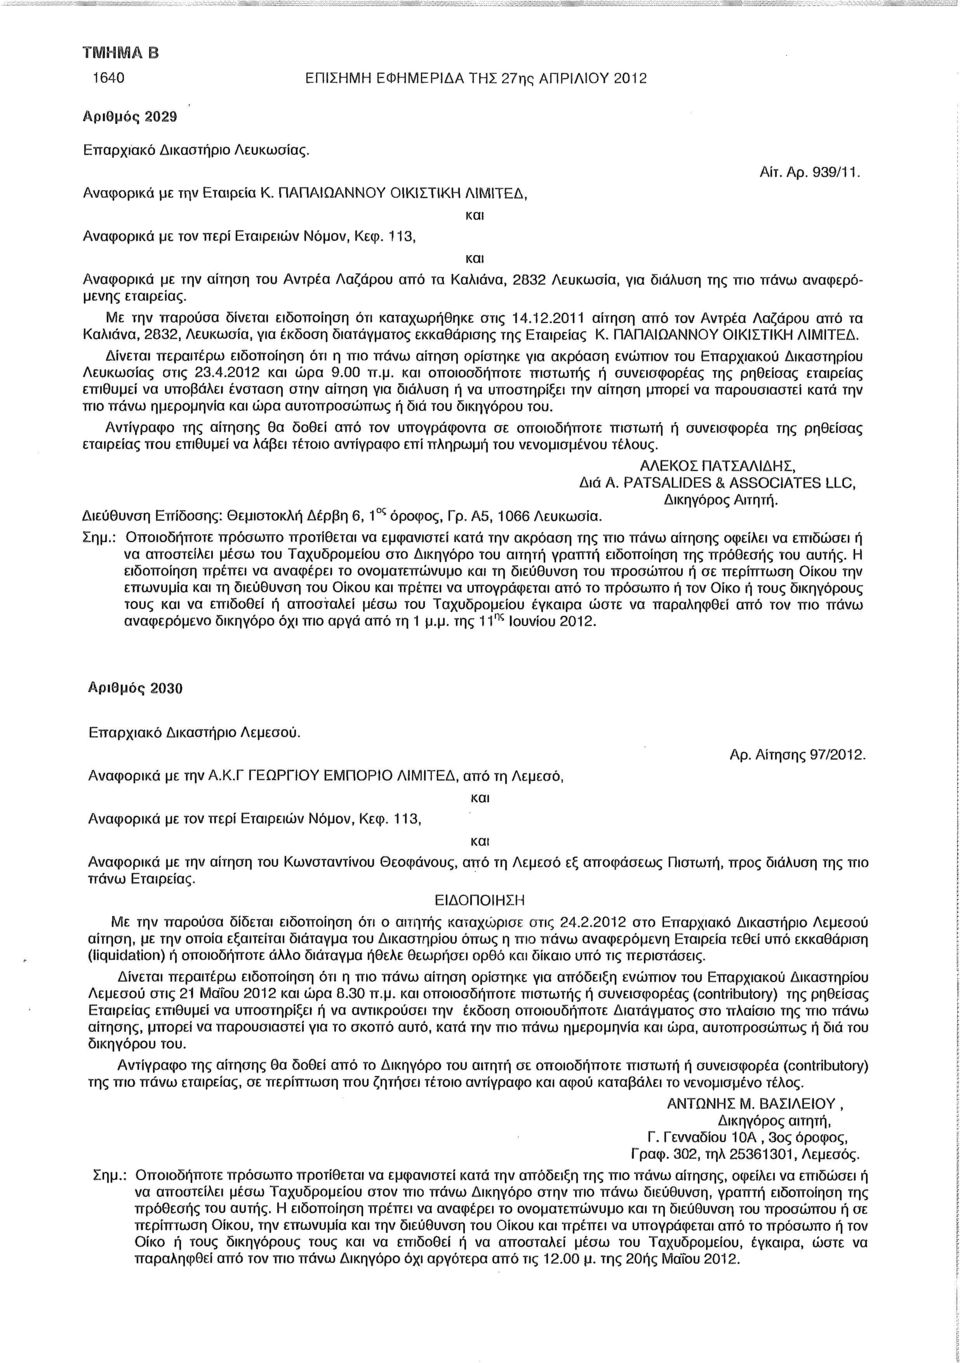 Με την παρούσα δίνεται ειδοποίηση ότι καταχωρήθηκε στις 14.12.2011 αίτηση από τον Αντρέα Λαζάρου από τα Καλιάνα, 2832, Λευκωσία, για έκδοση διατάγματος εκκαθάρισης της Εταιρείας Κ.